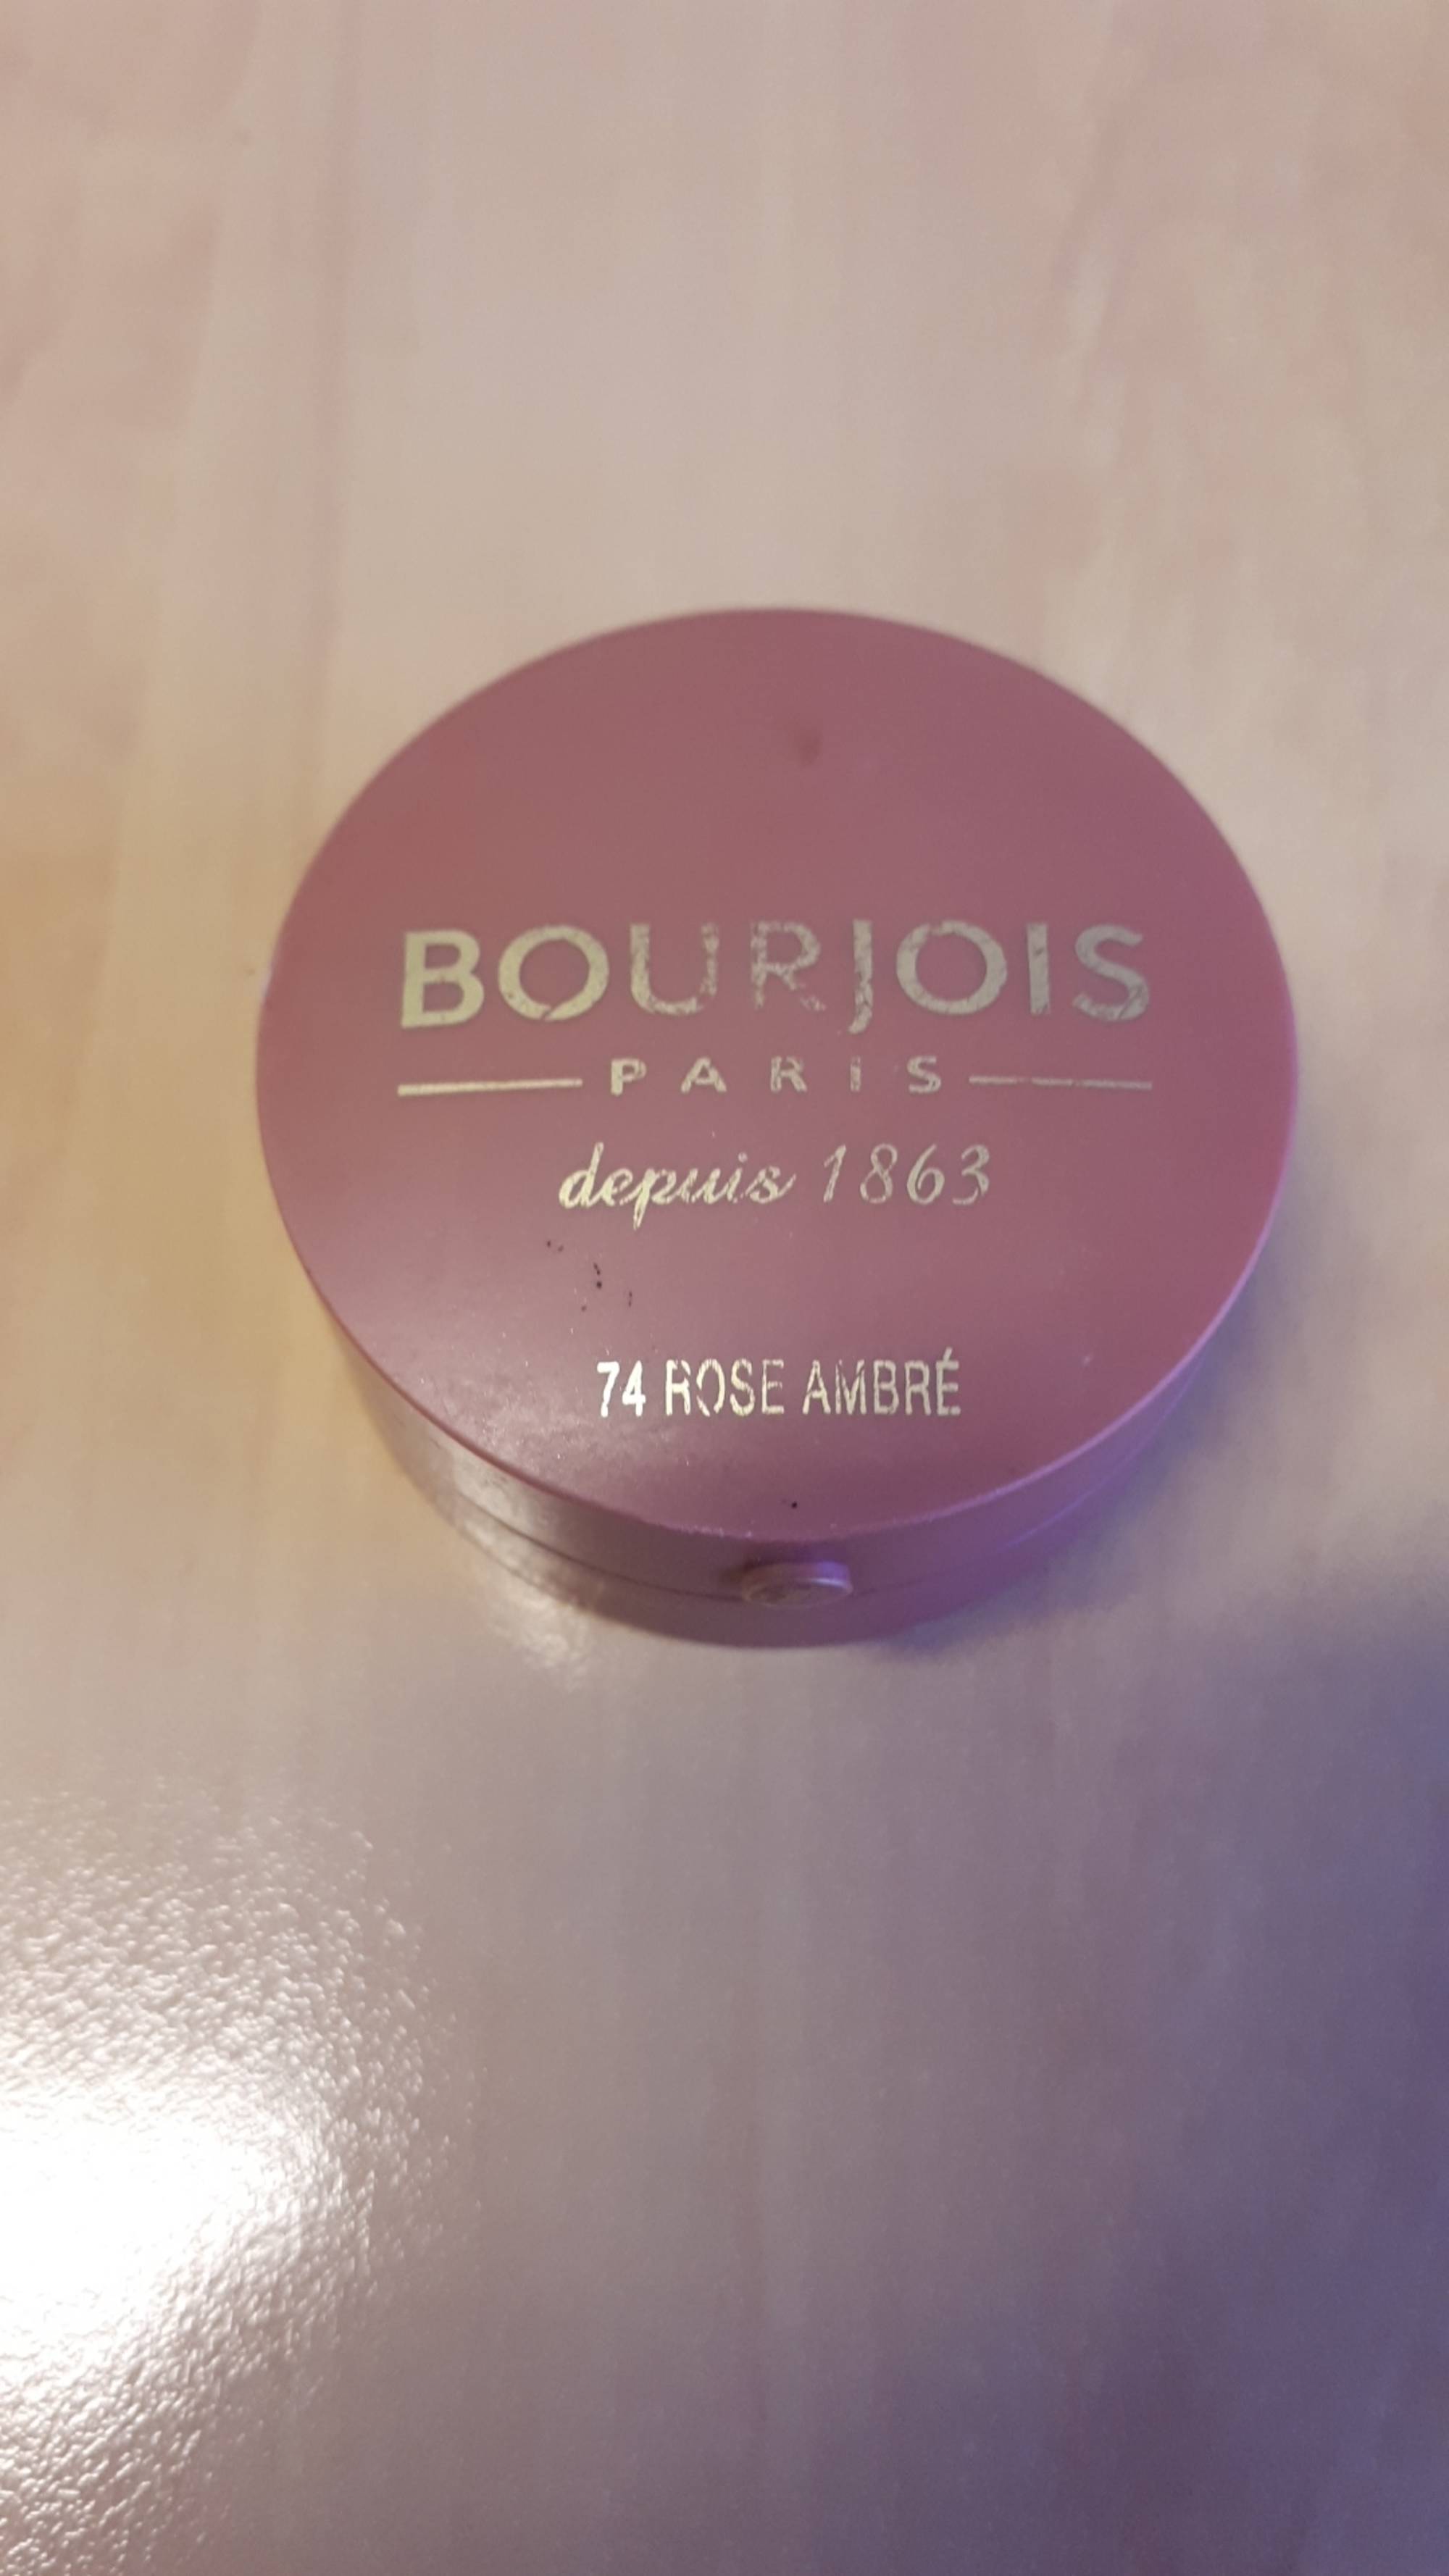 BOURJOIS - Fard à joues - 74 rose ambré